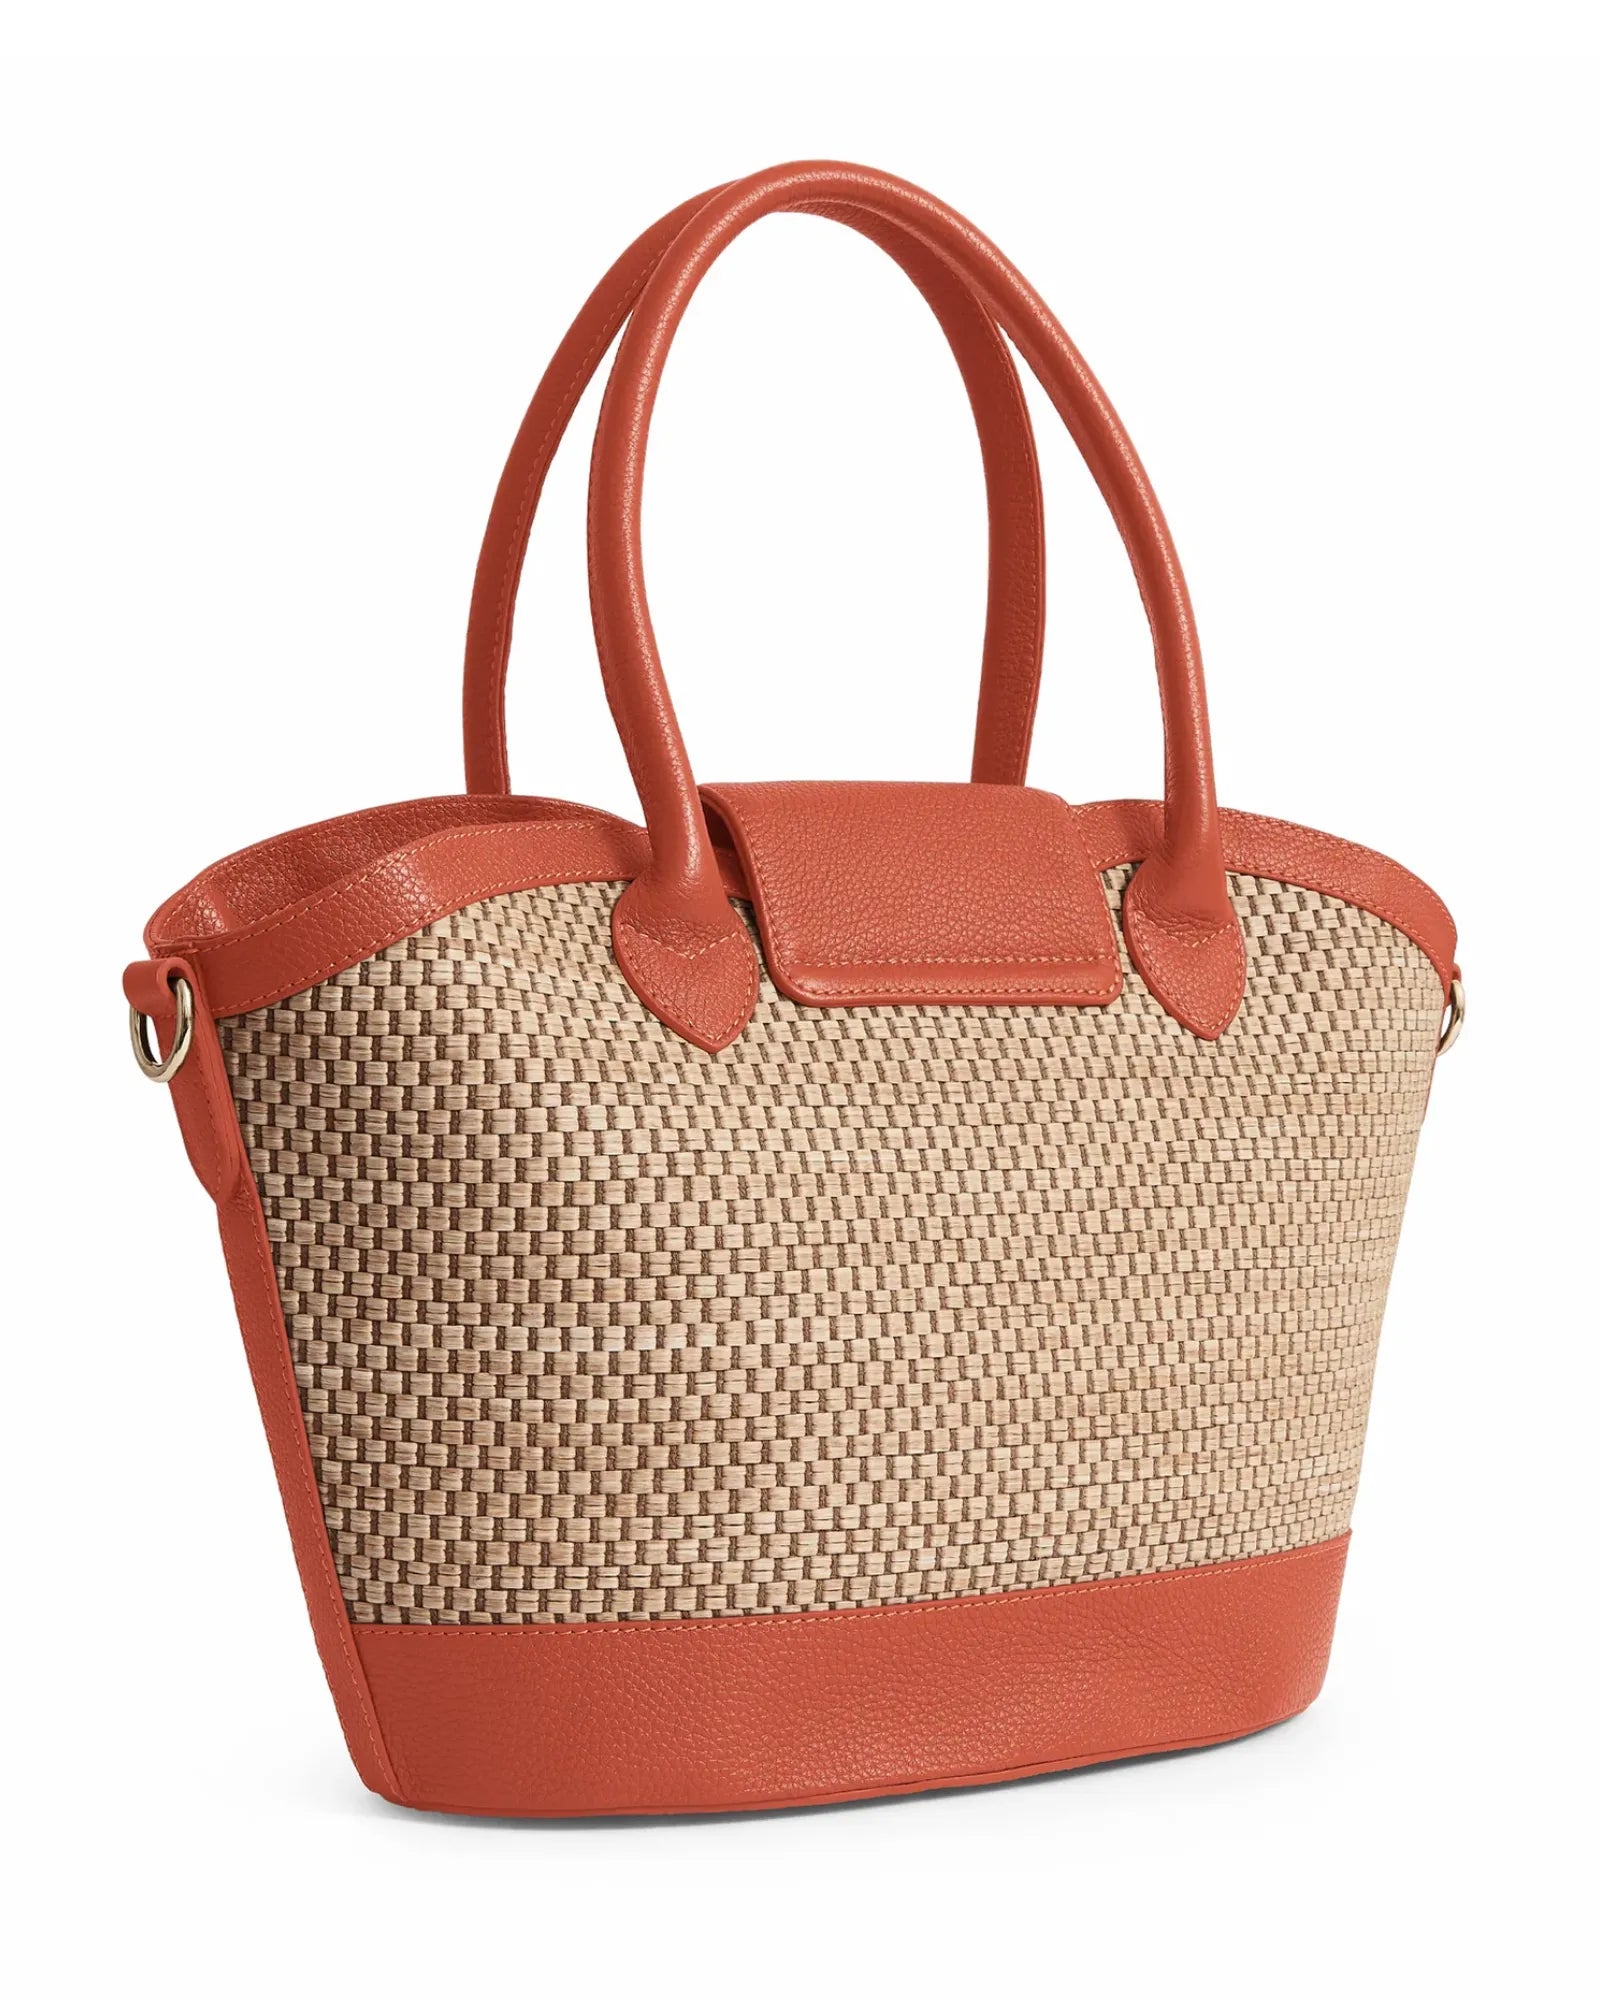 Windsor Basket Bag - Melon Leather